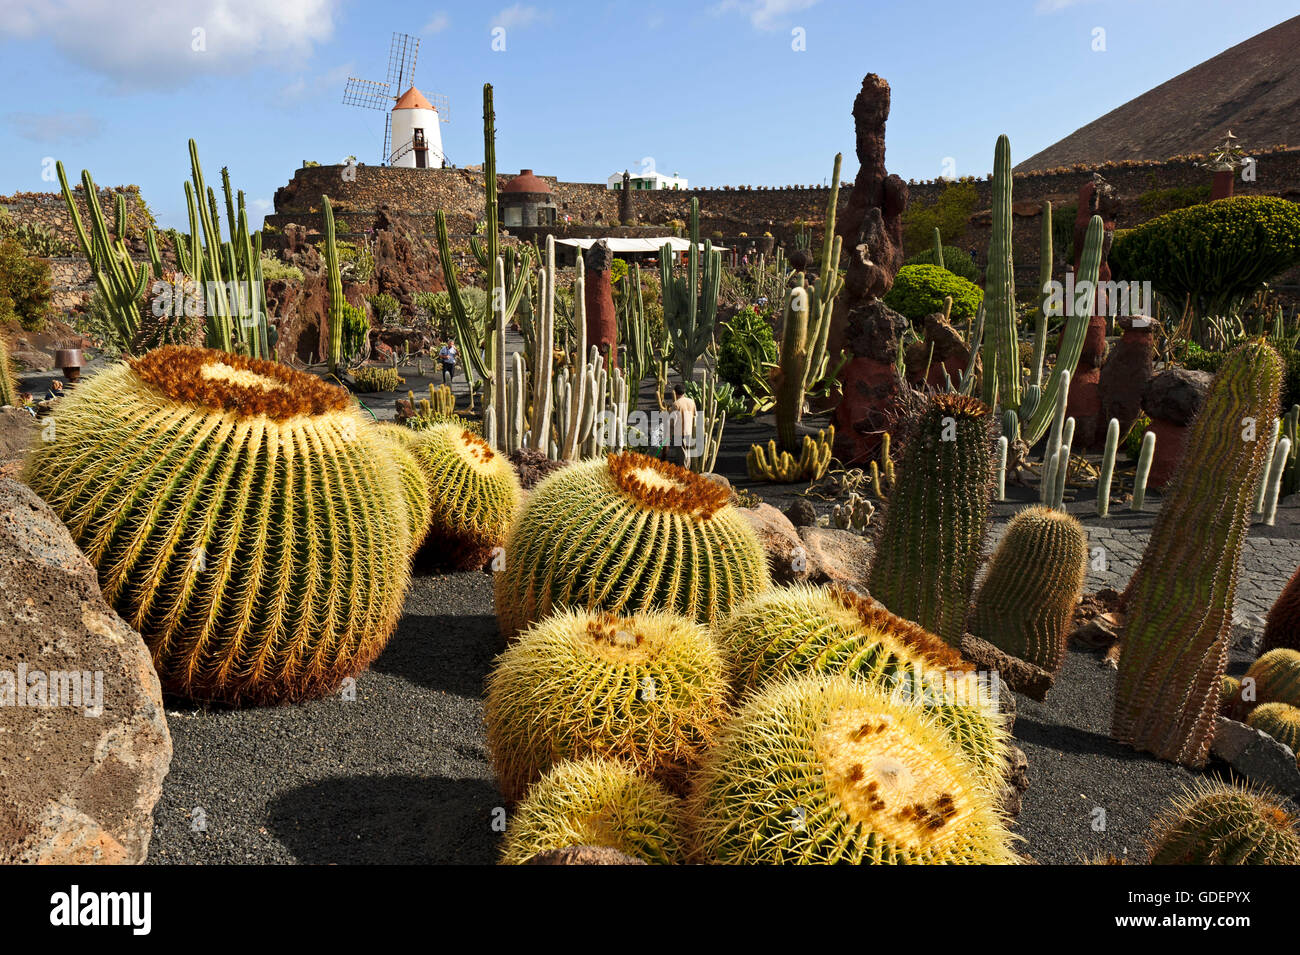 Jardin de Cactus, cactus garden, Guatiza, Lanzarote, Canary Islands, Spain  / by Cesar Manrique Stock Photo - Alamy